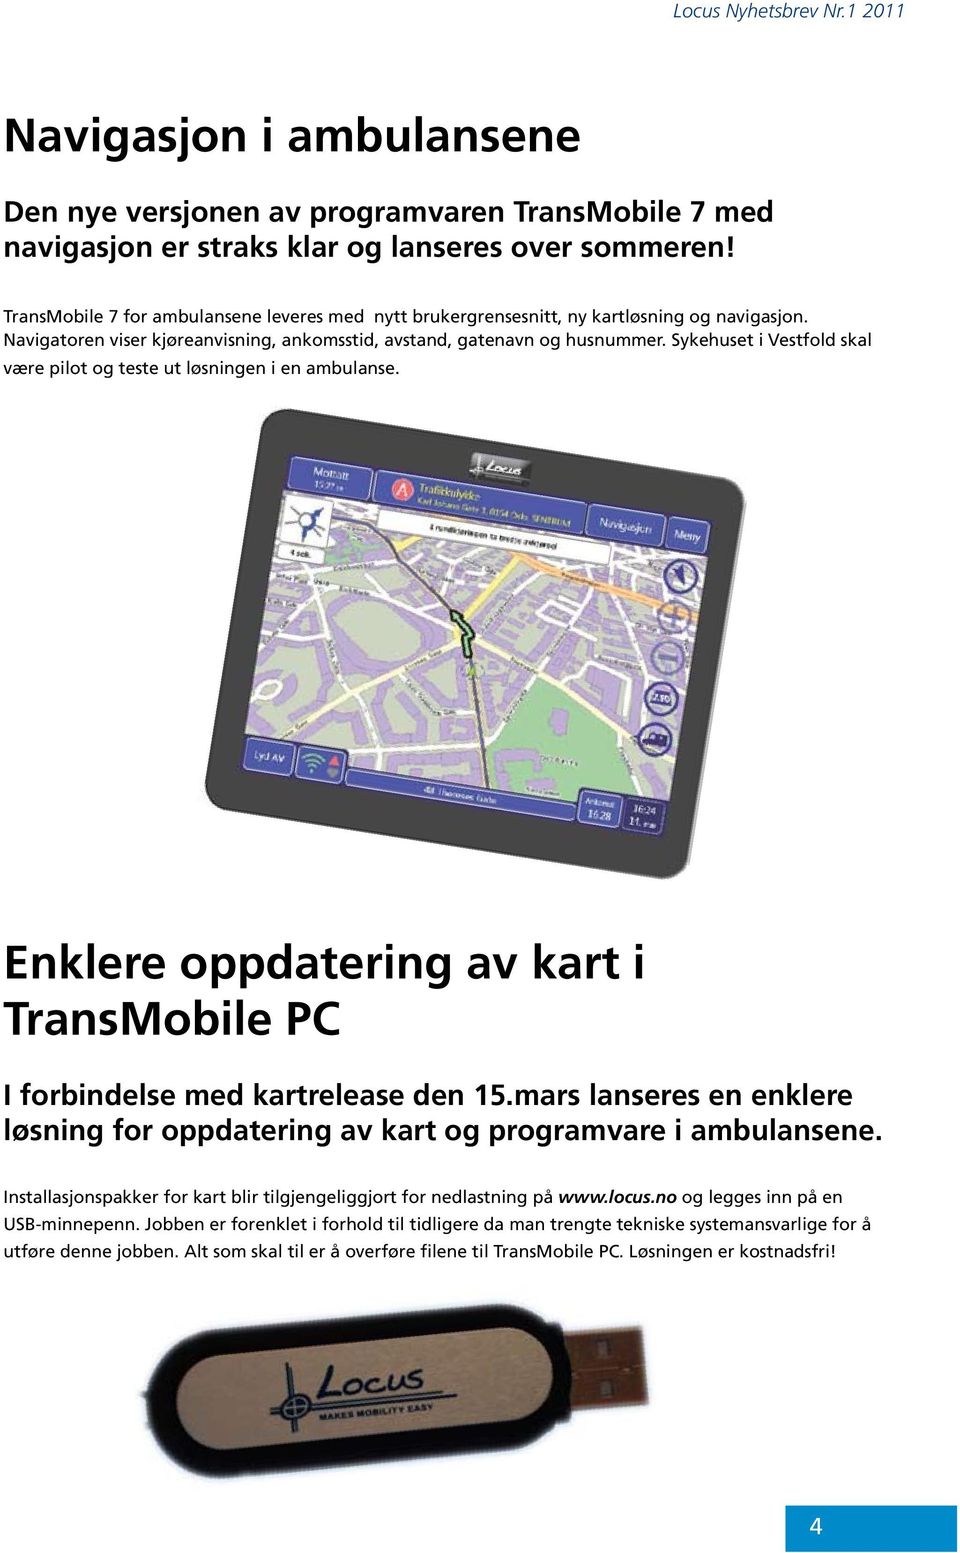 Sykehuset i Vestfold skal være pilot og teste ut løsningen i en ambulanse. Enklere oppdatering av kart i TransMobile PC I forbindelse med kartrelease den 15.